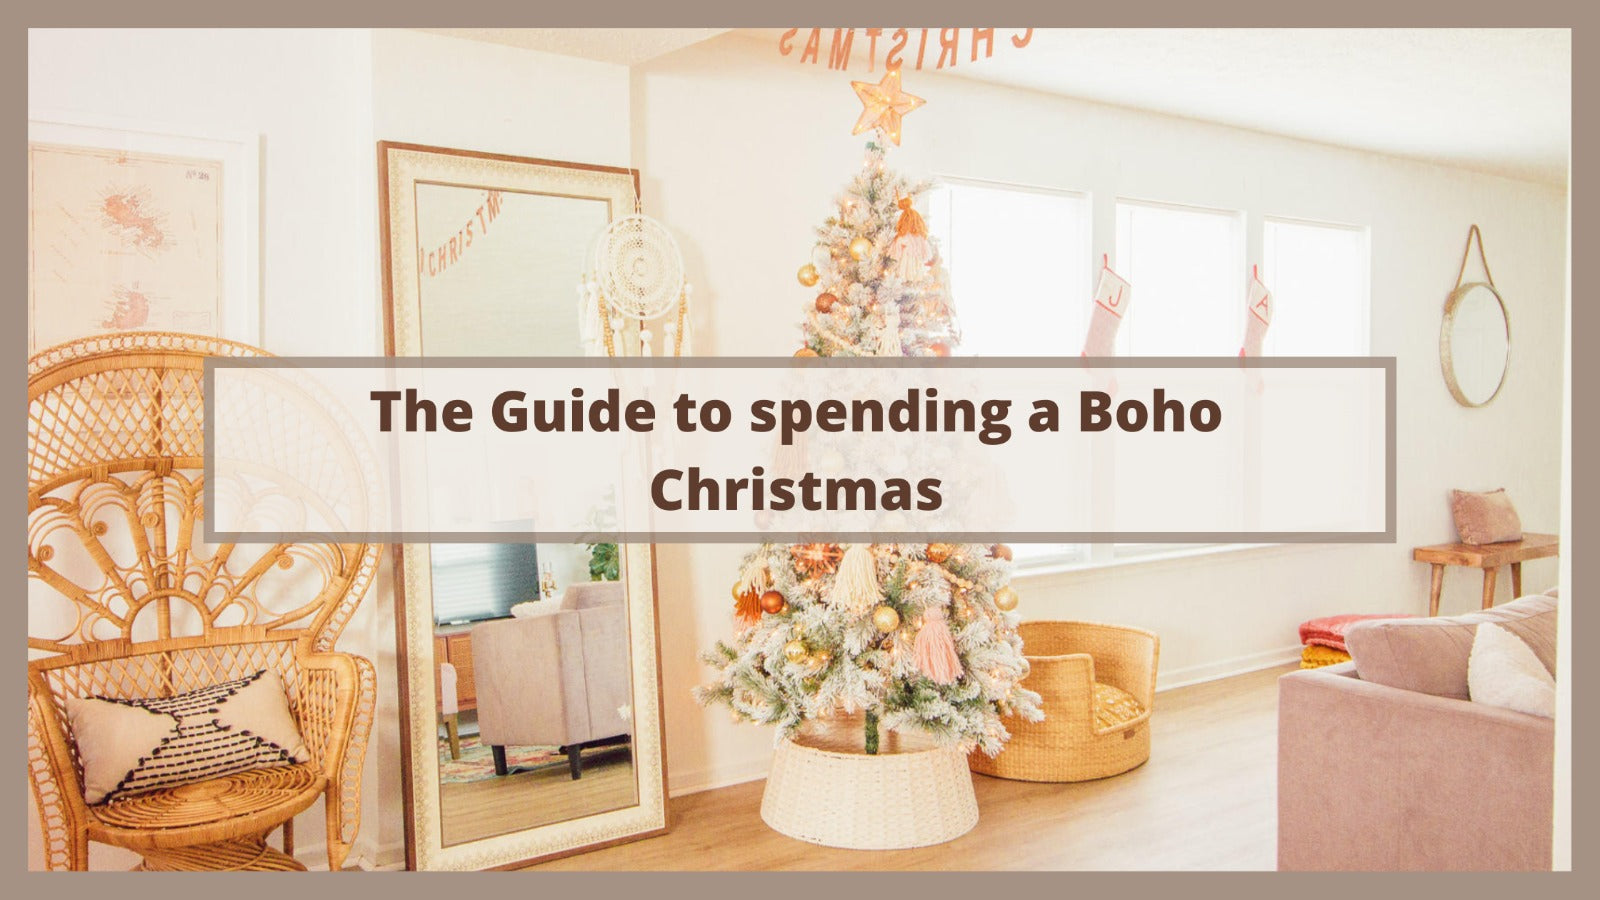 The Guide to spending a Boho Christmas